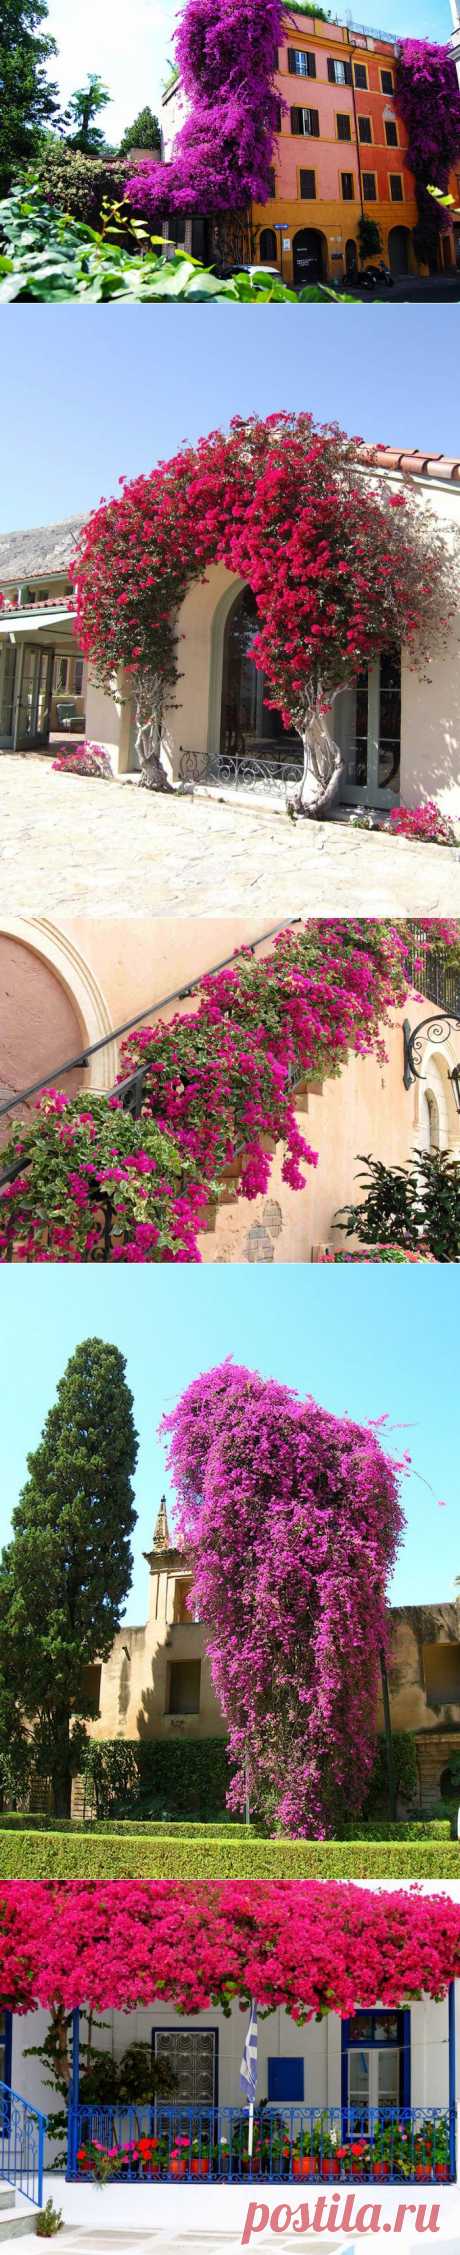 ФотоТелеграф » Бугенвиллея – растение для украшения архитектуры